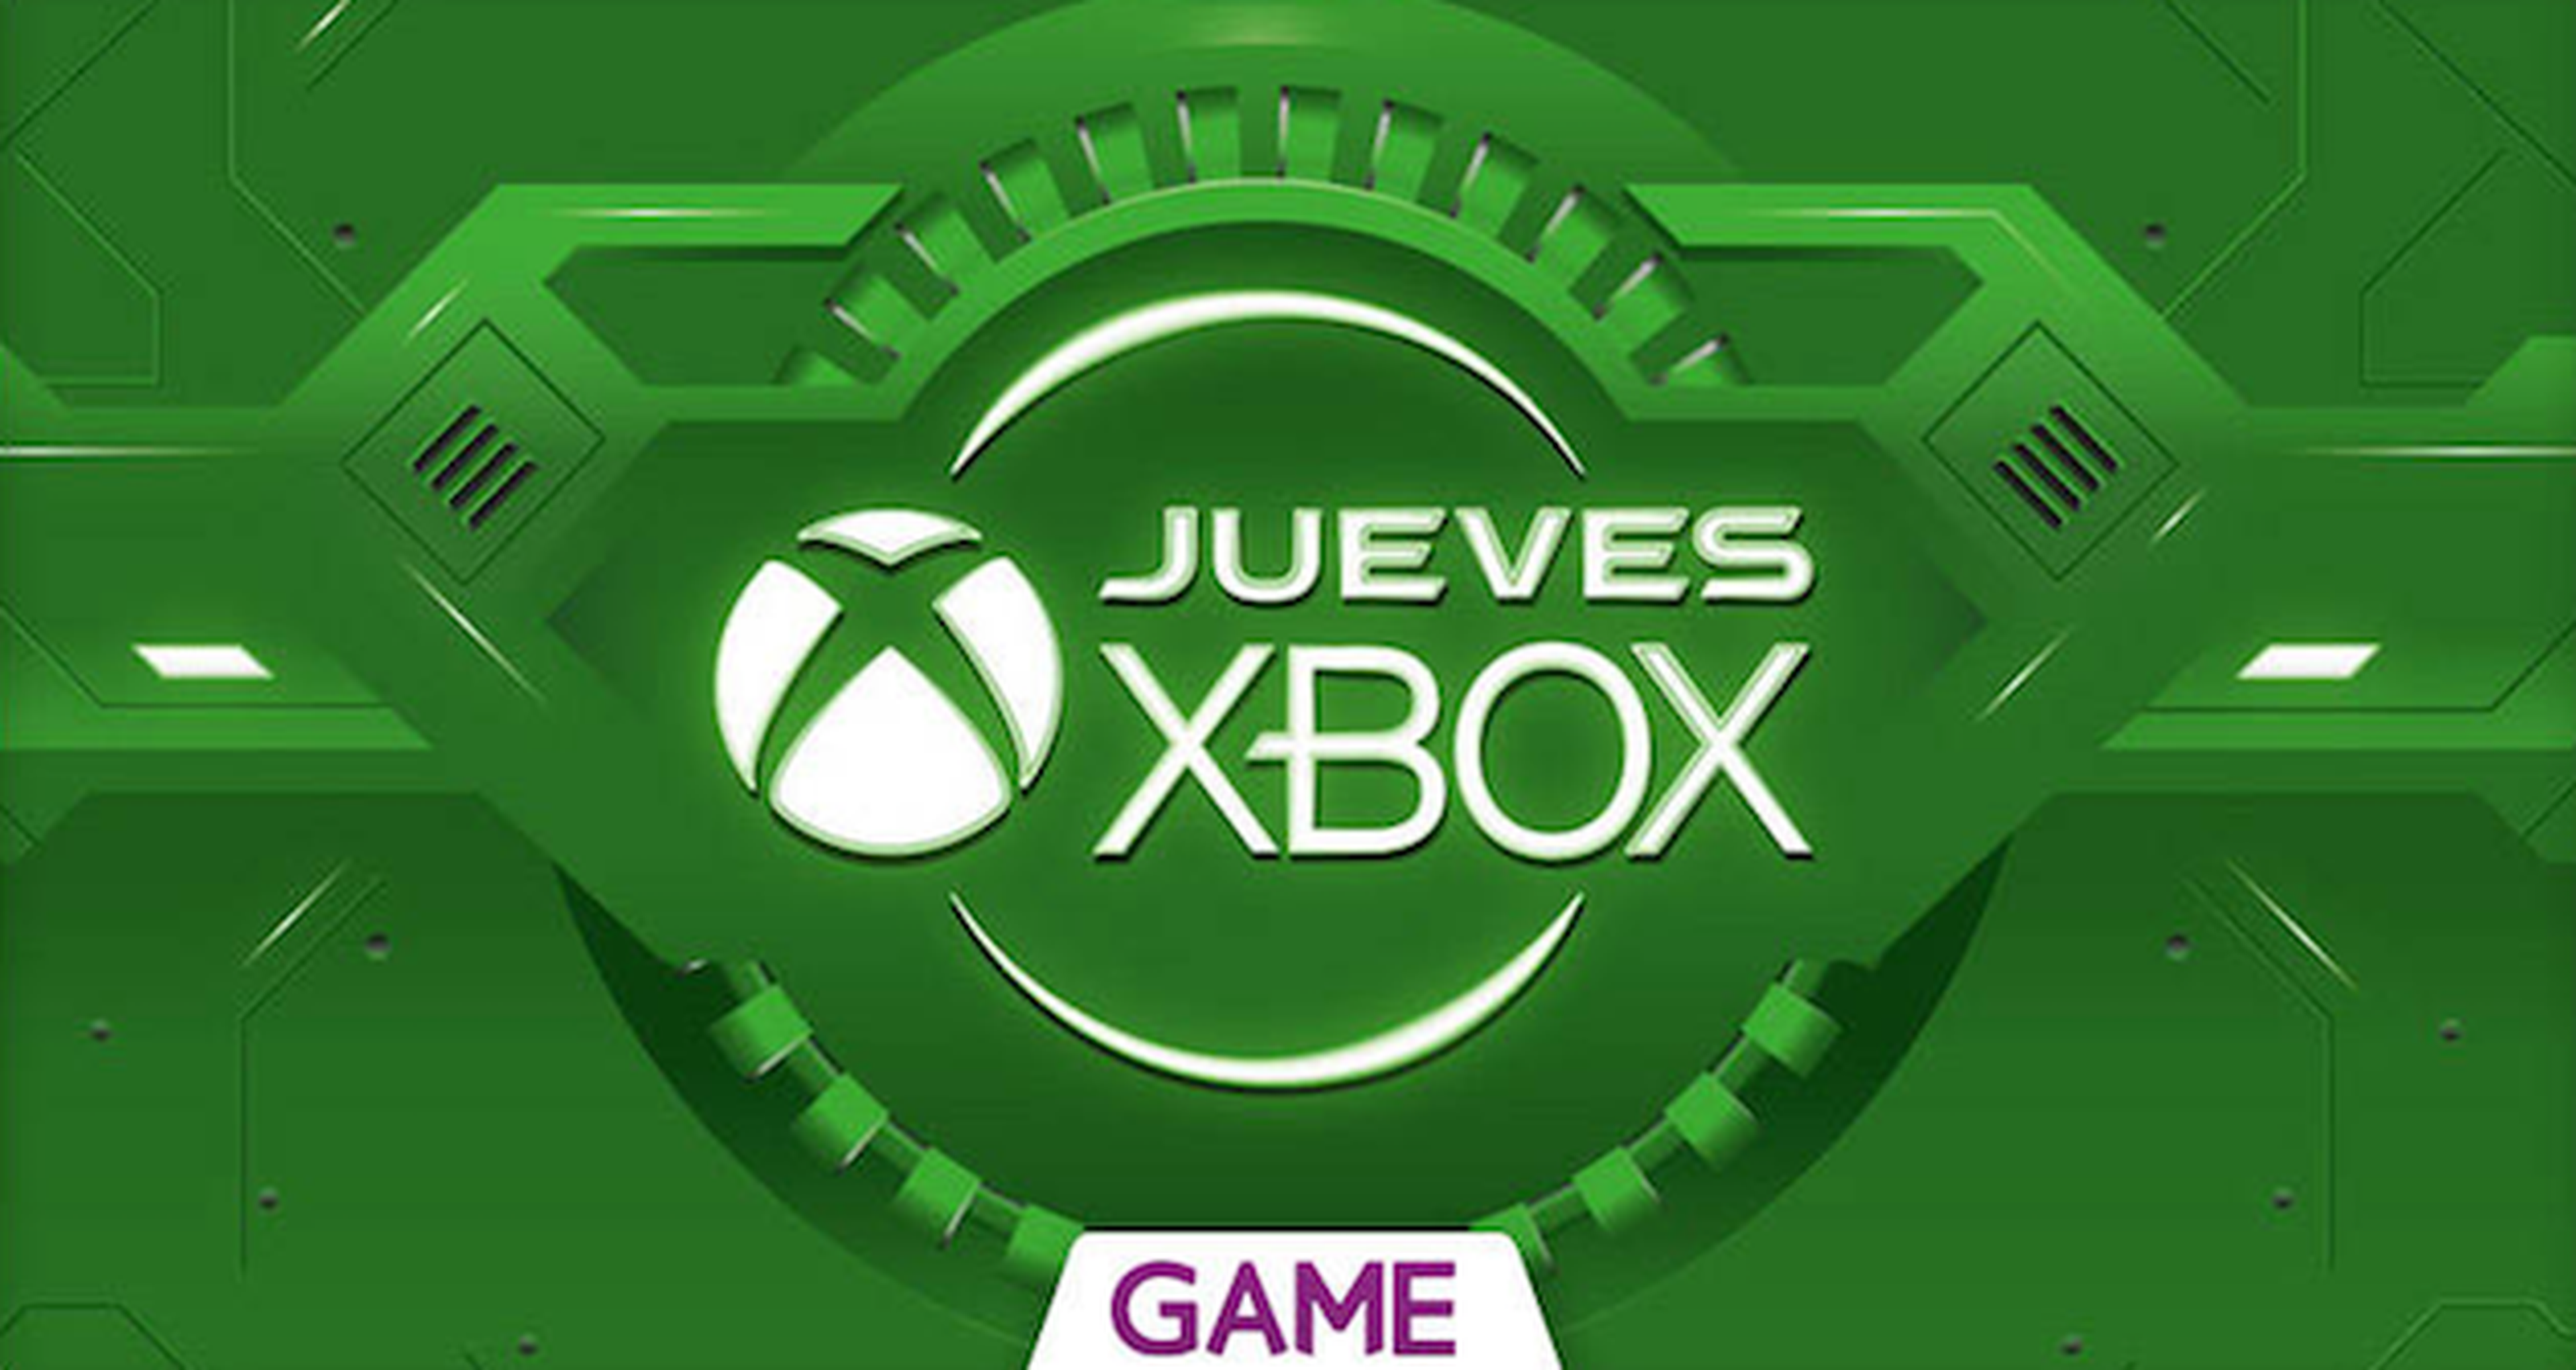 Jueves Xbox en GAME: séptima semana de ofertas